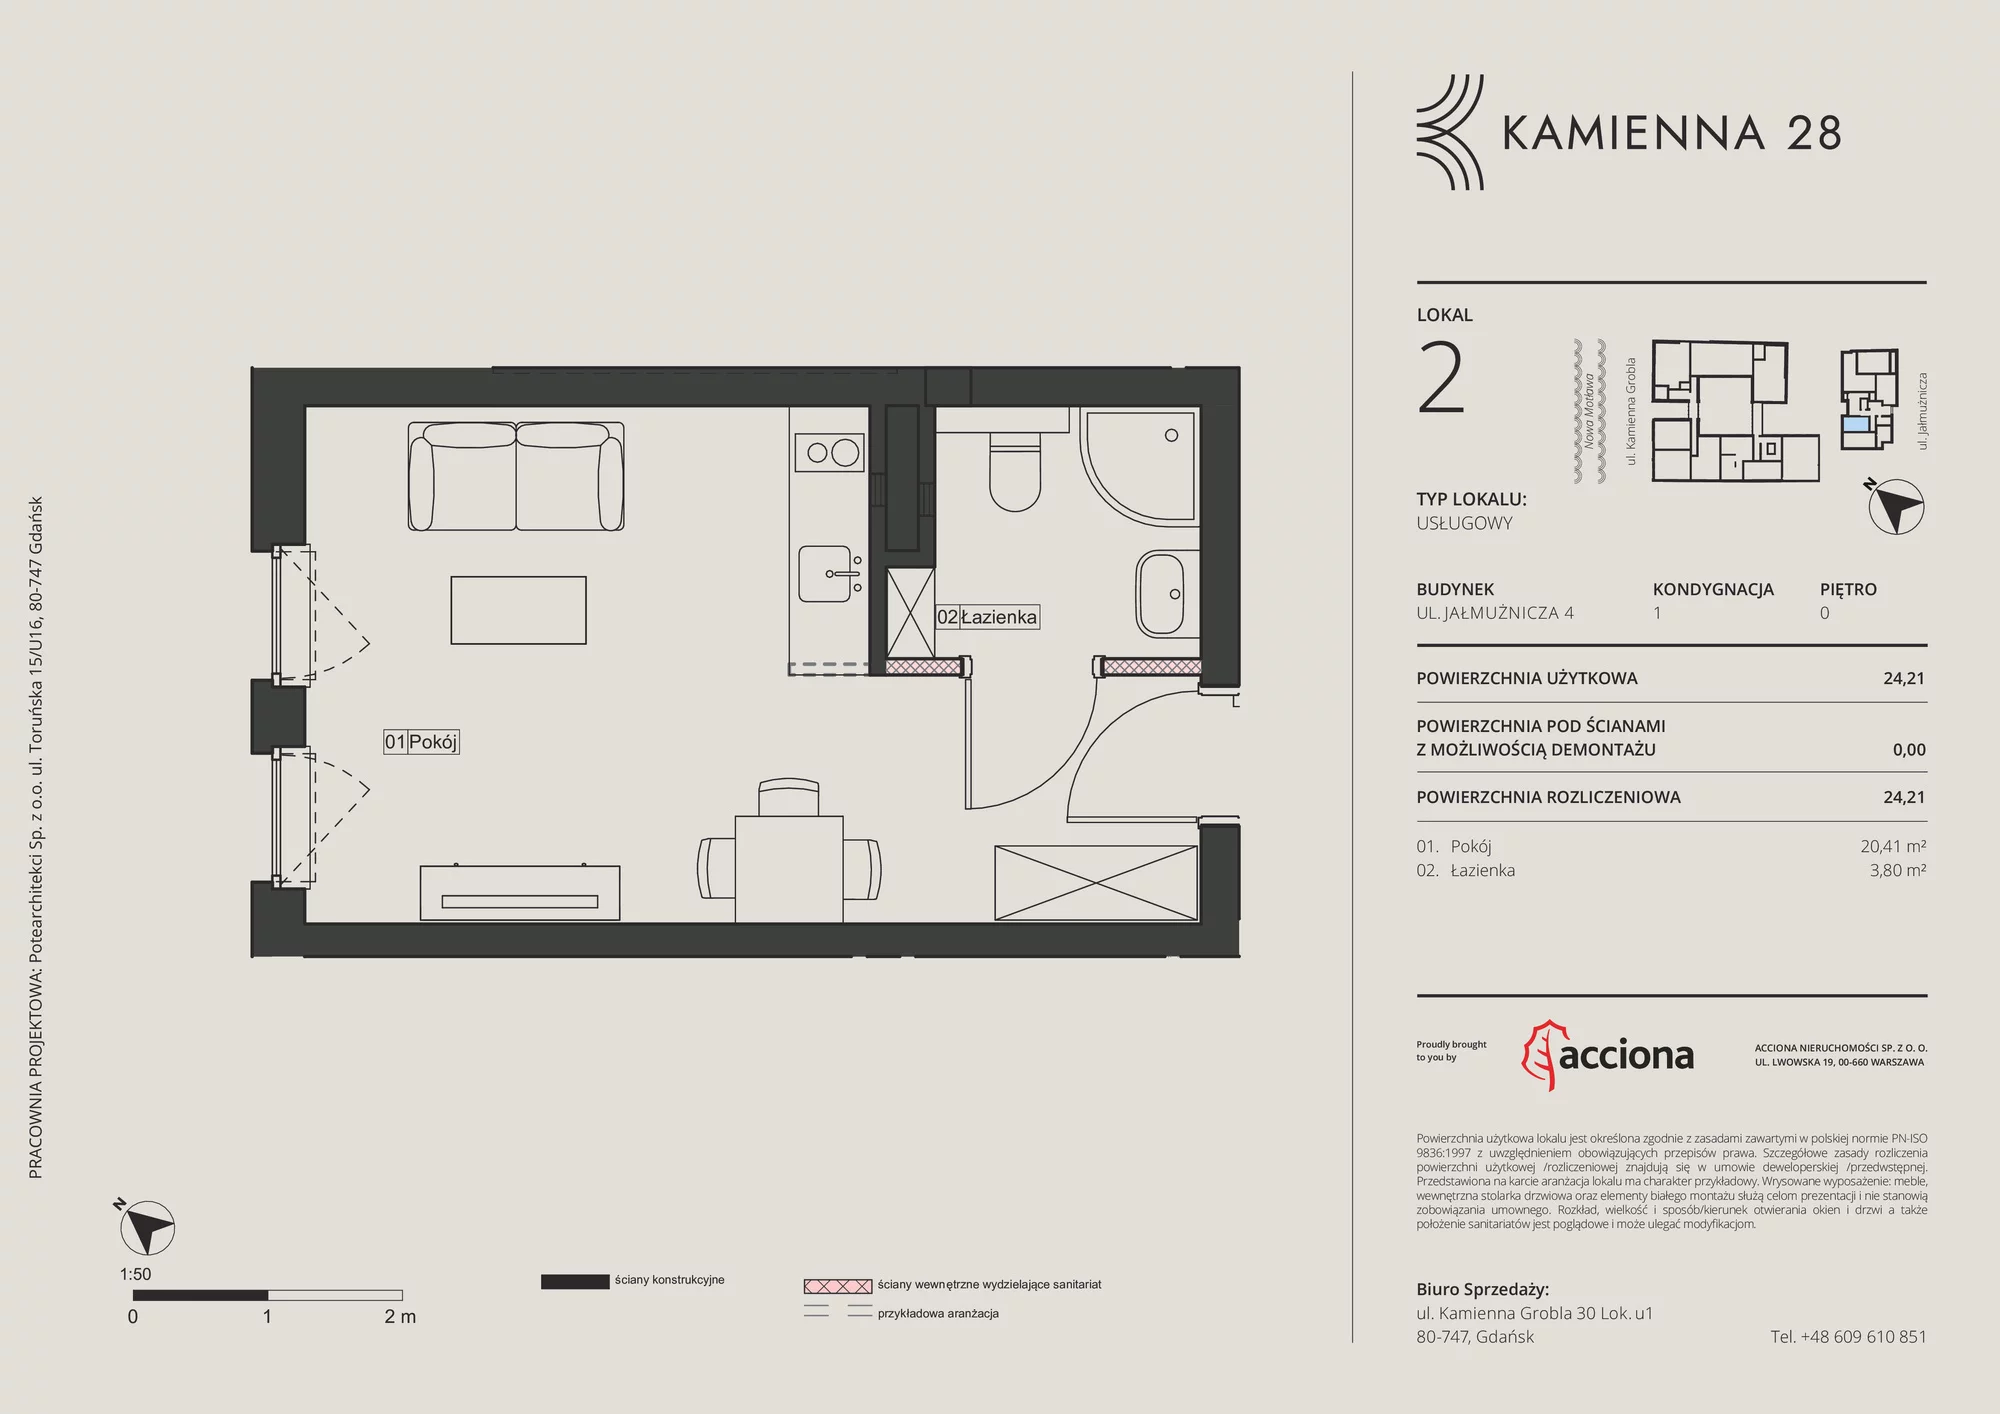 Apartament inwestycyjny 24,21 m², parter, oferta nr 4.2, Kamienna 28 - apartamenty inwestycyjne, Gdańsk, Śródmieście, Dolne Miasto, ul. Jałmużnicza 4